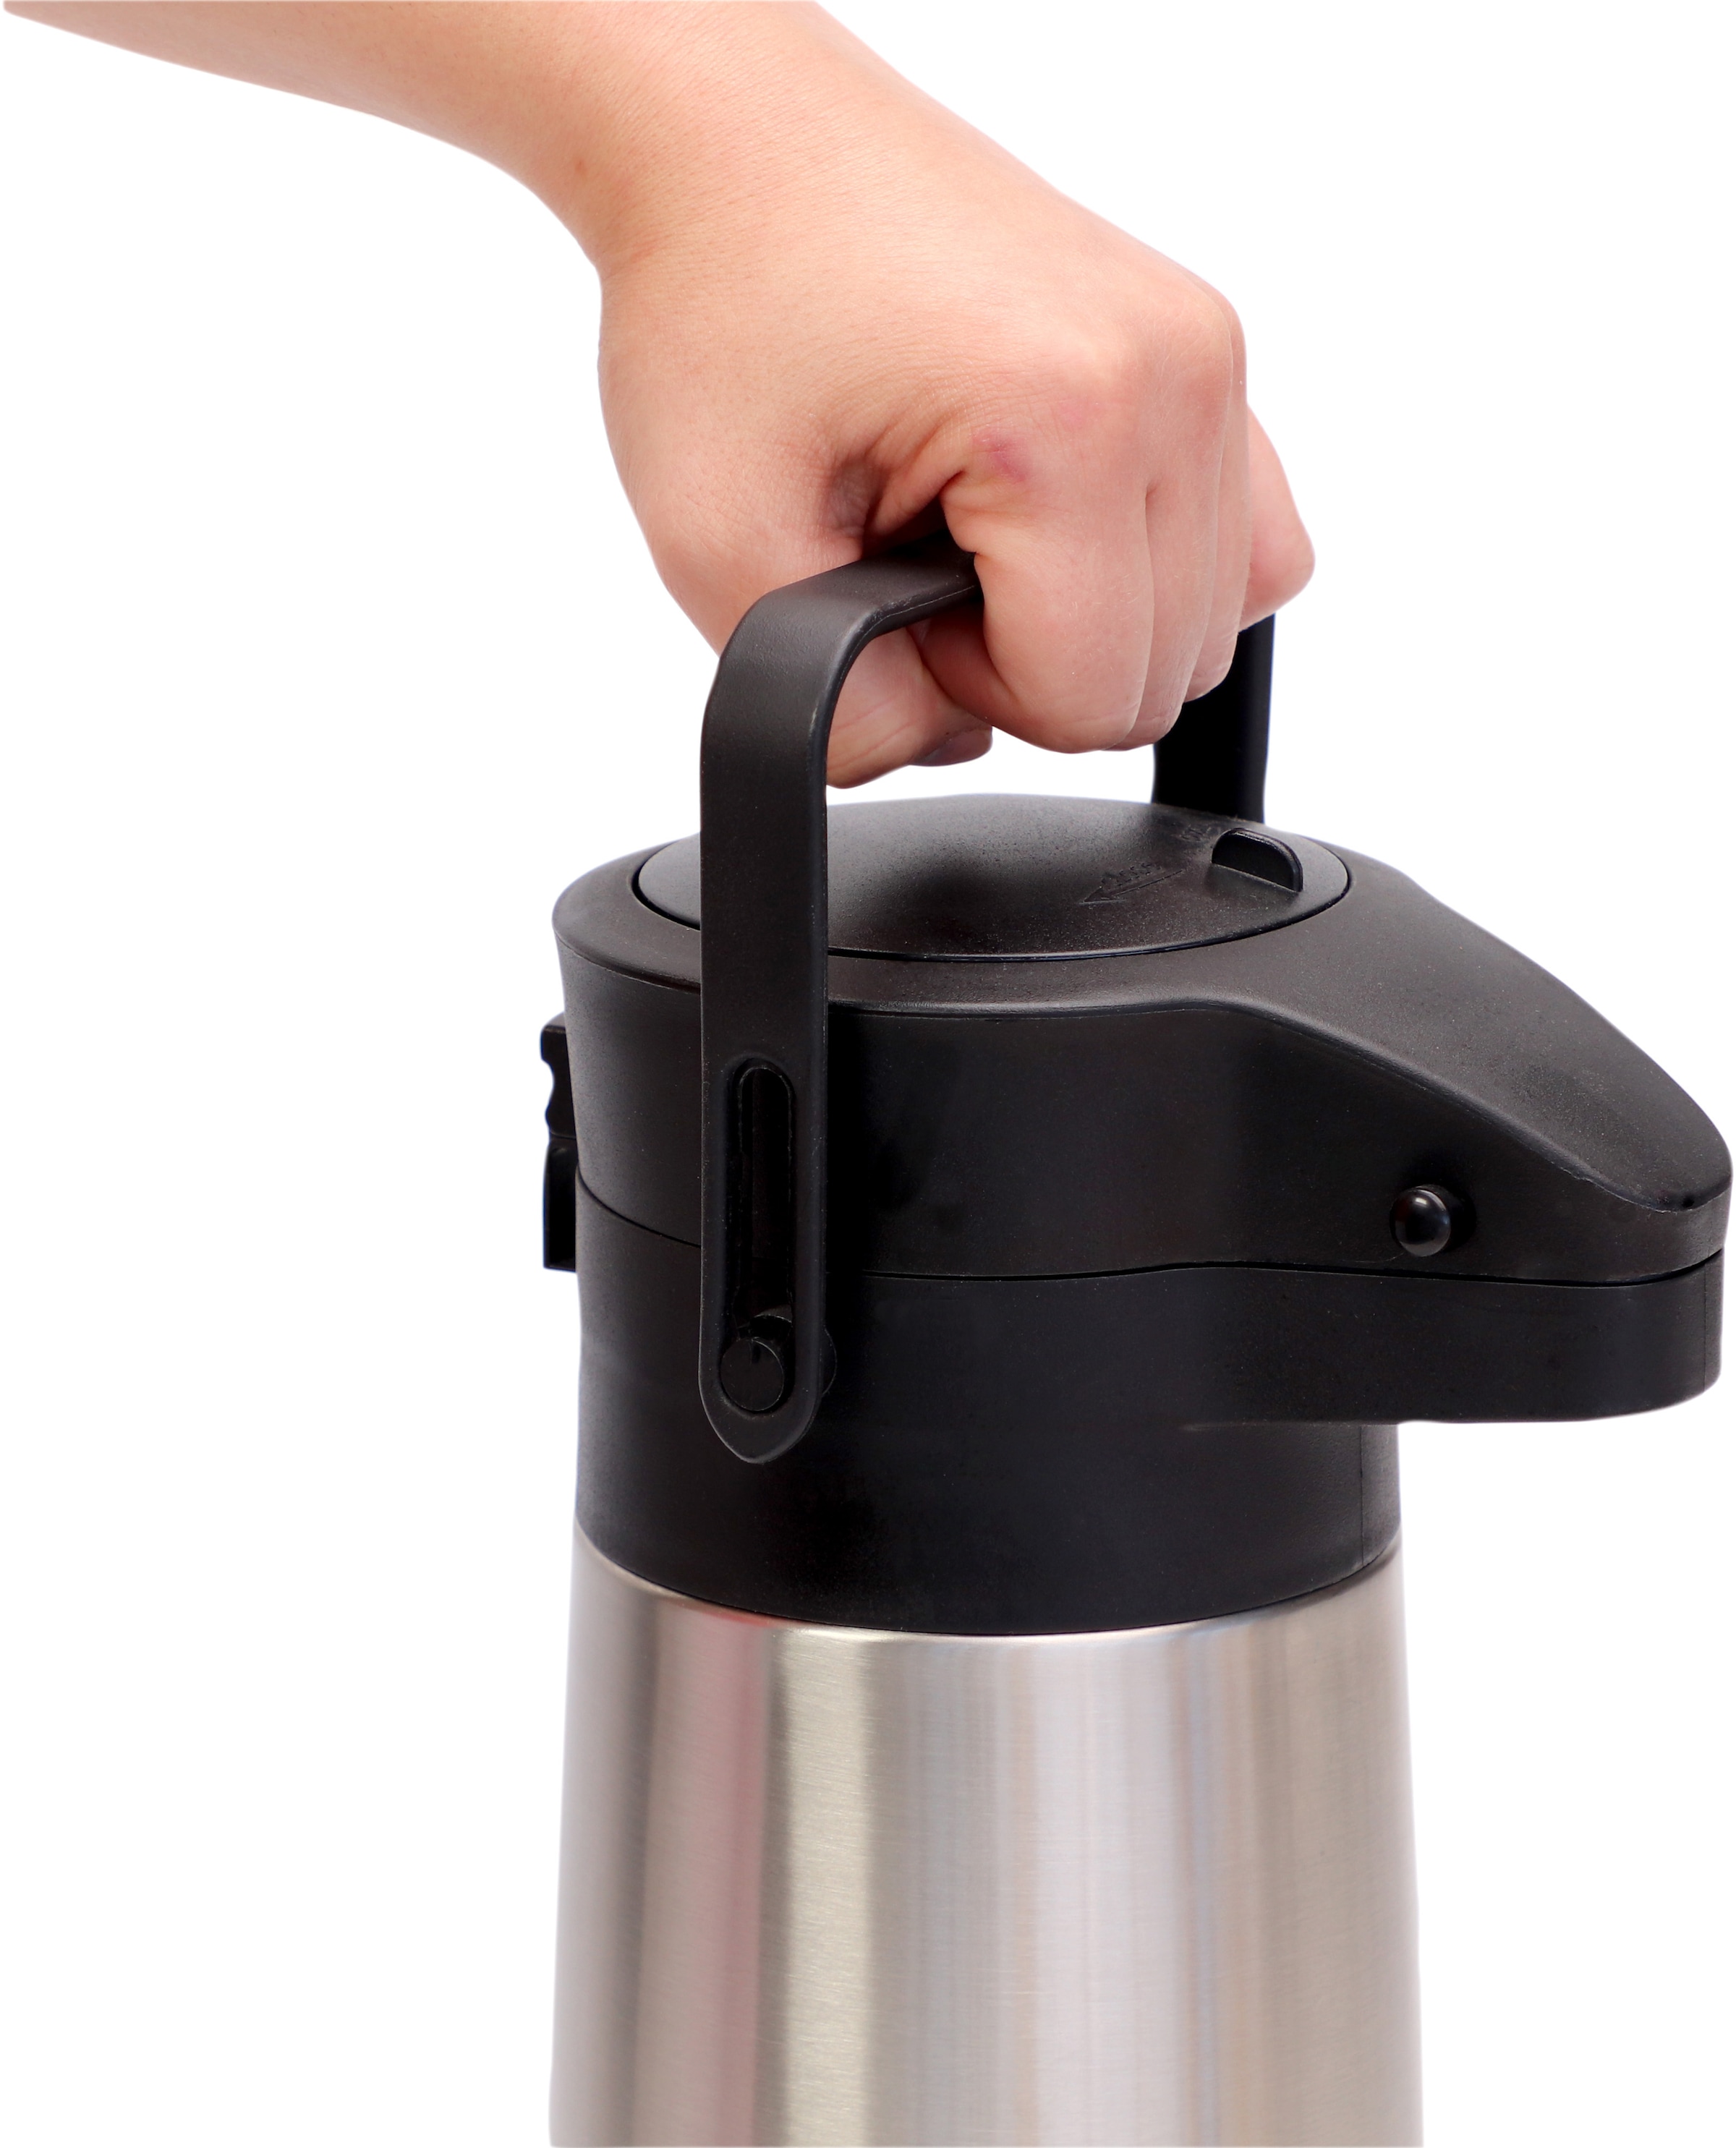 APS Pump-Isolierkanne »Budget«, 2,2 l, Dreh-Pumpknopf, für bis zu 17 Tassen Kaffee, doppelwandige Isolierung